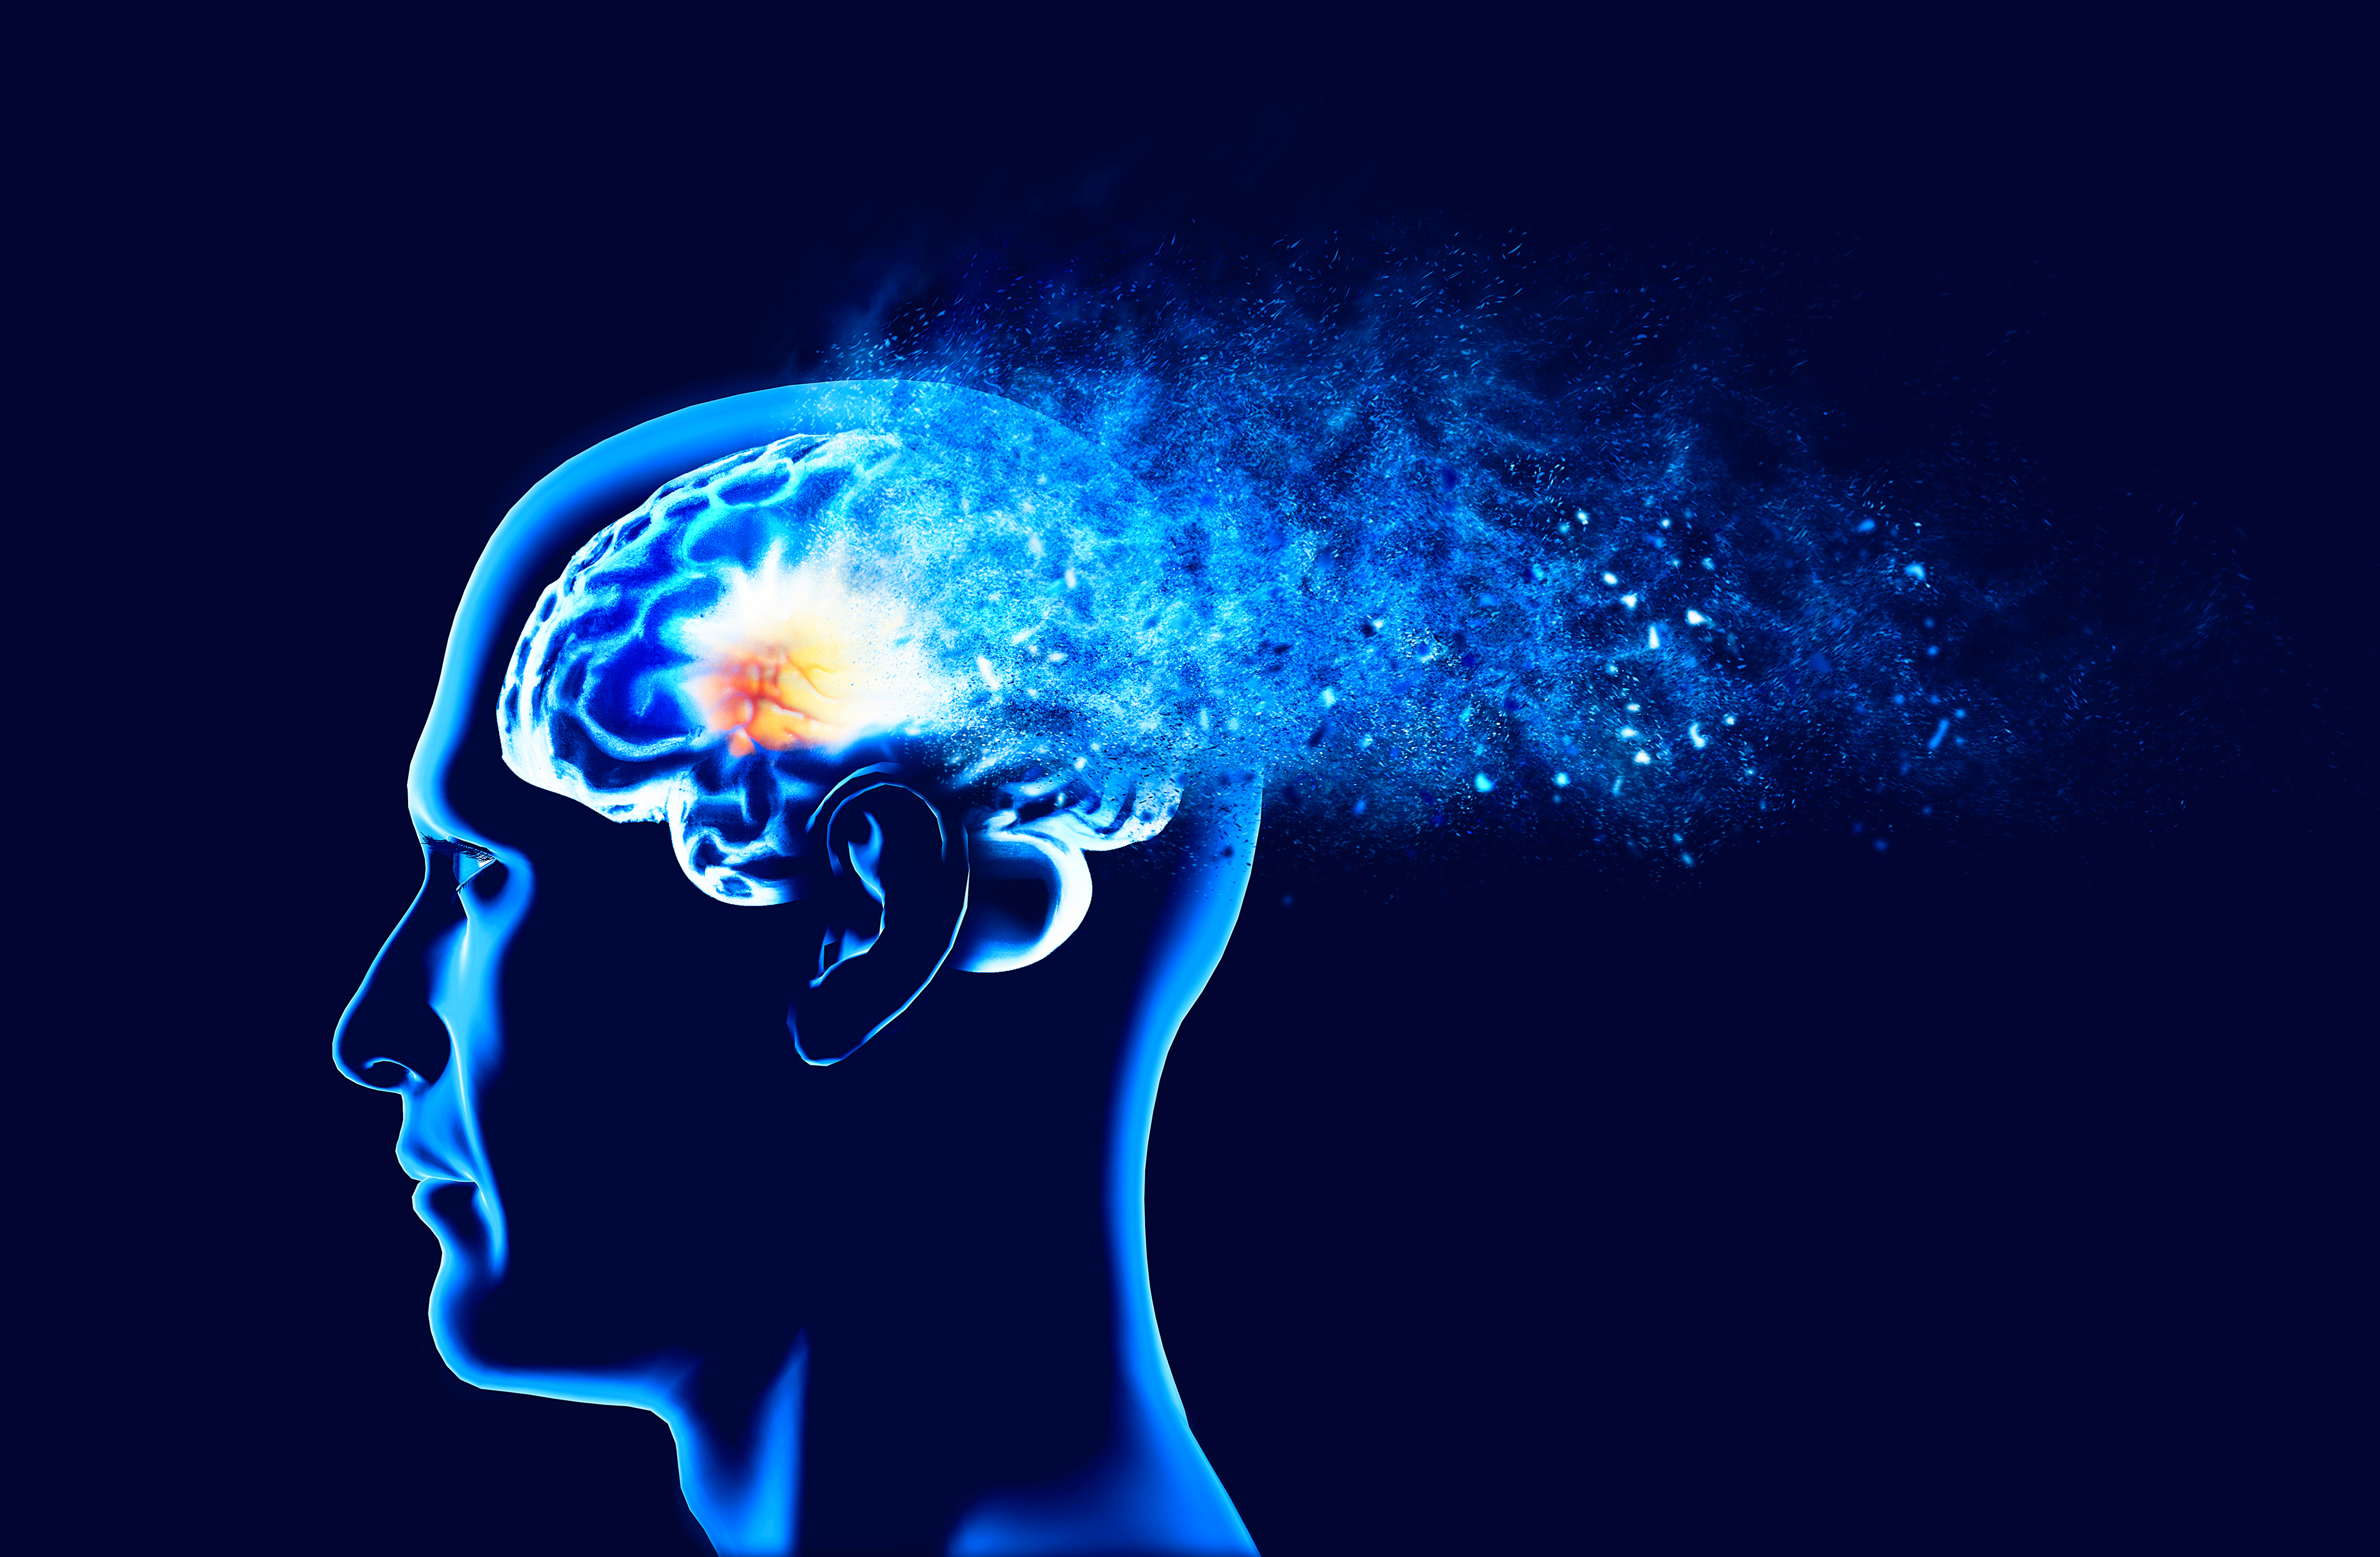 Brain disorder. Работа мозга человека. Снижение когнитивных способностей. Мозг человека с Альцгеймером.